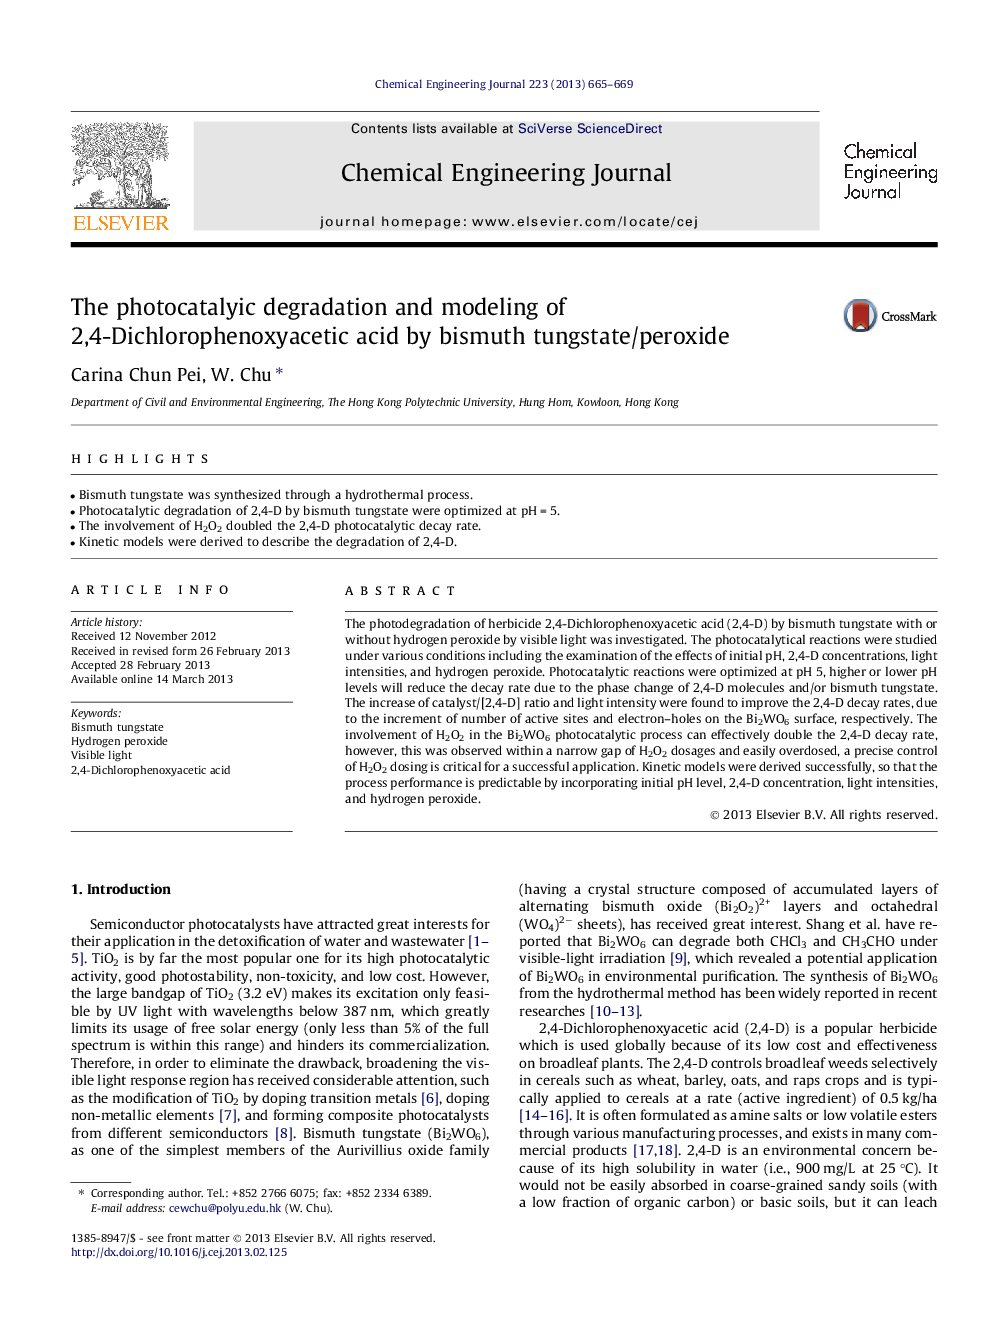 تخریب فتوکاتالی و مدلسازی اسید 2،4-دی هرولفنوکسی اسیدهای تیتانیوم با بیسموت تنگستات / پراکسید 